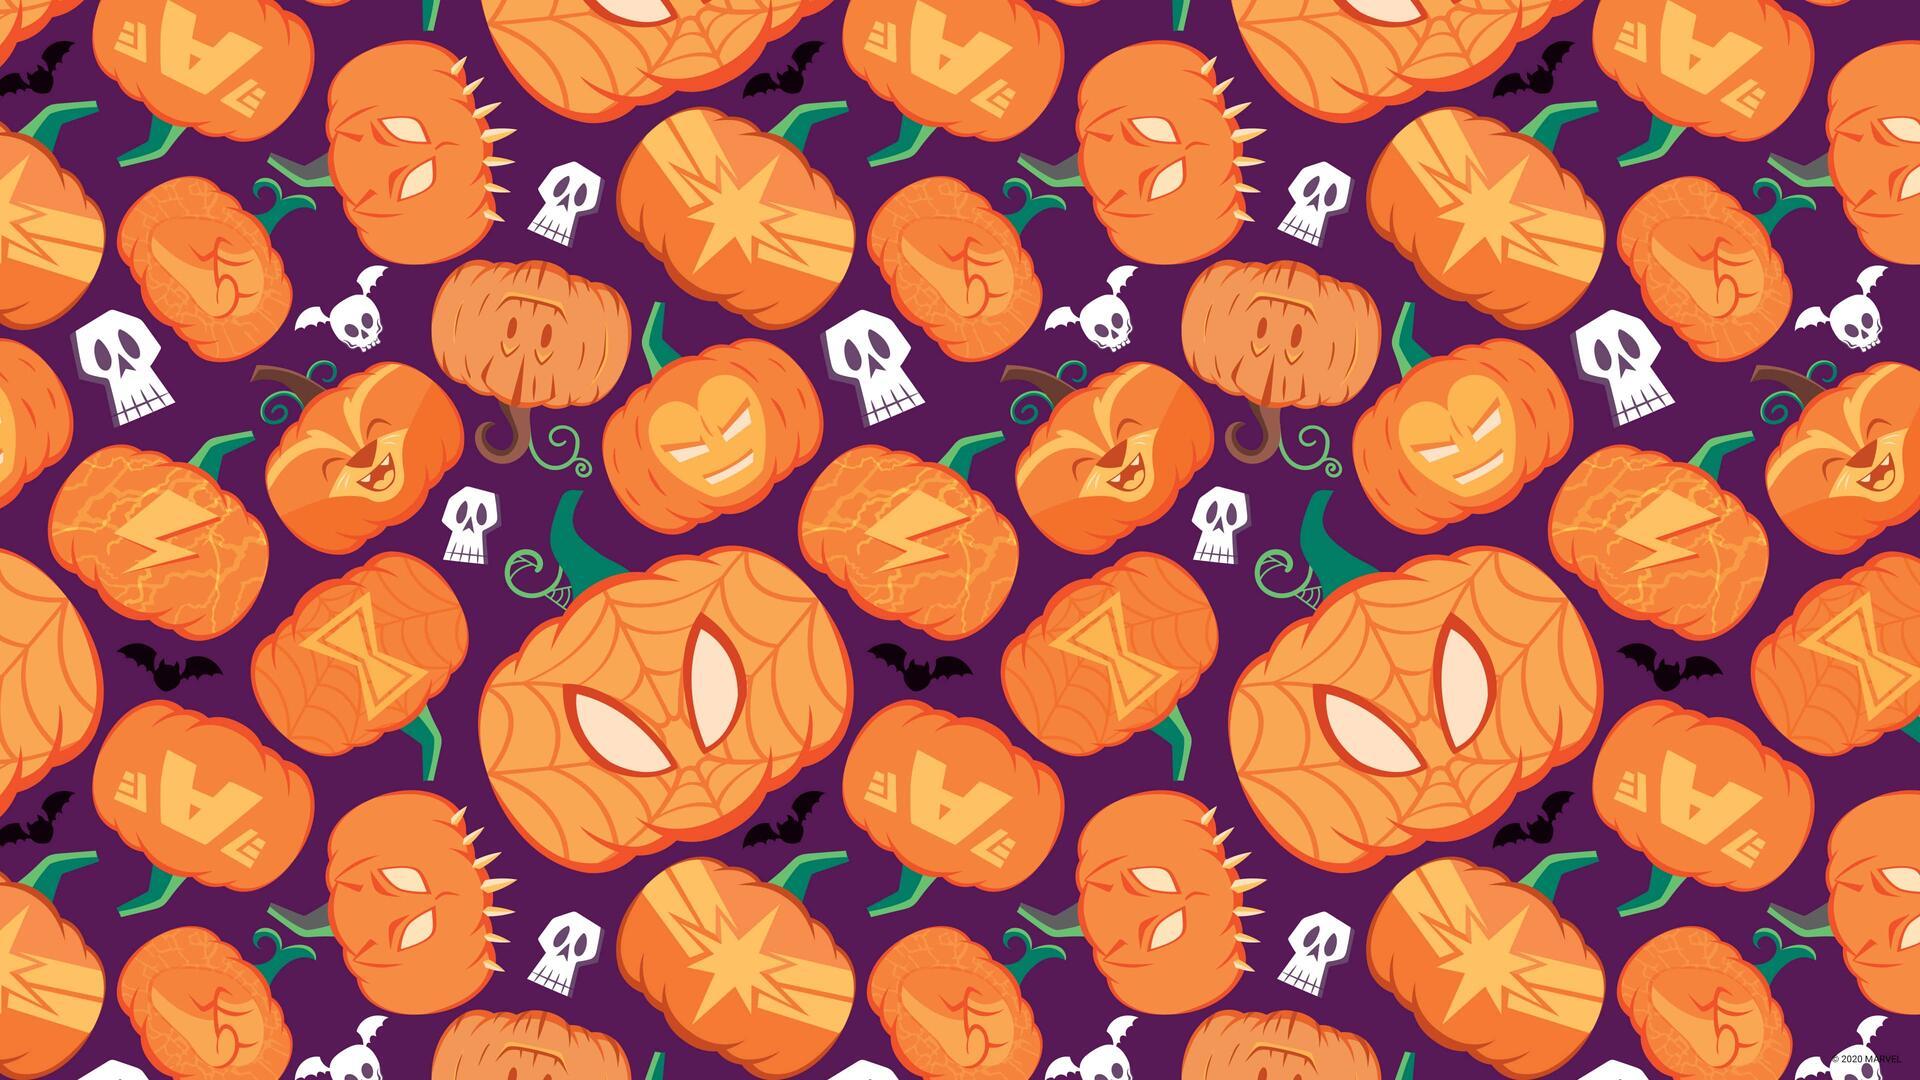 Marvel Halloween Wallpapers - Top Free Marvel Halloween Backgrounds ...